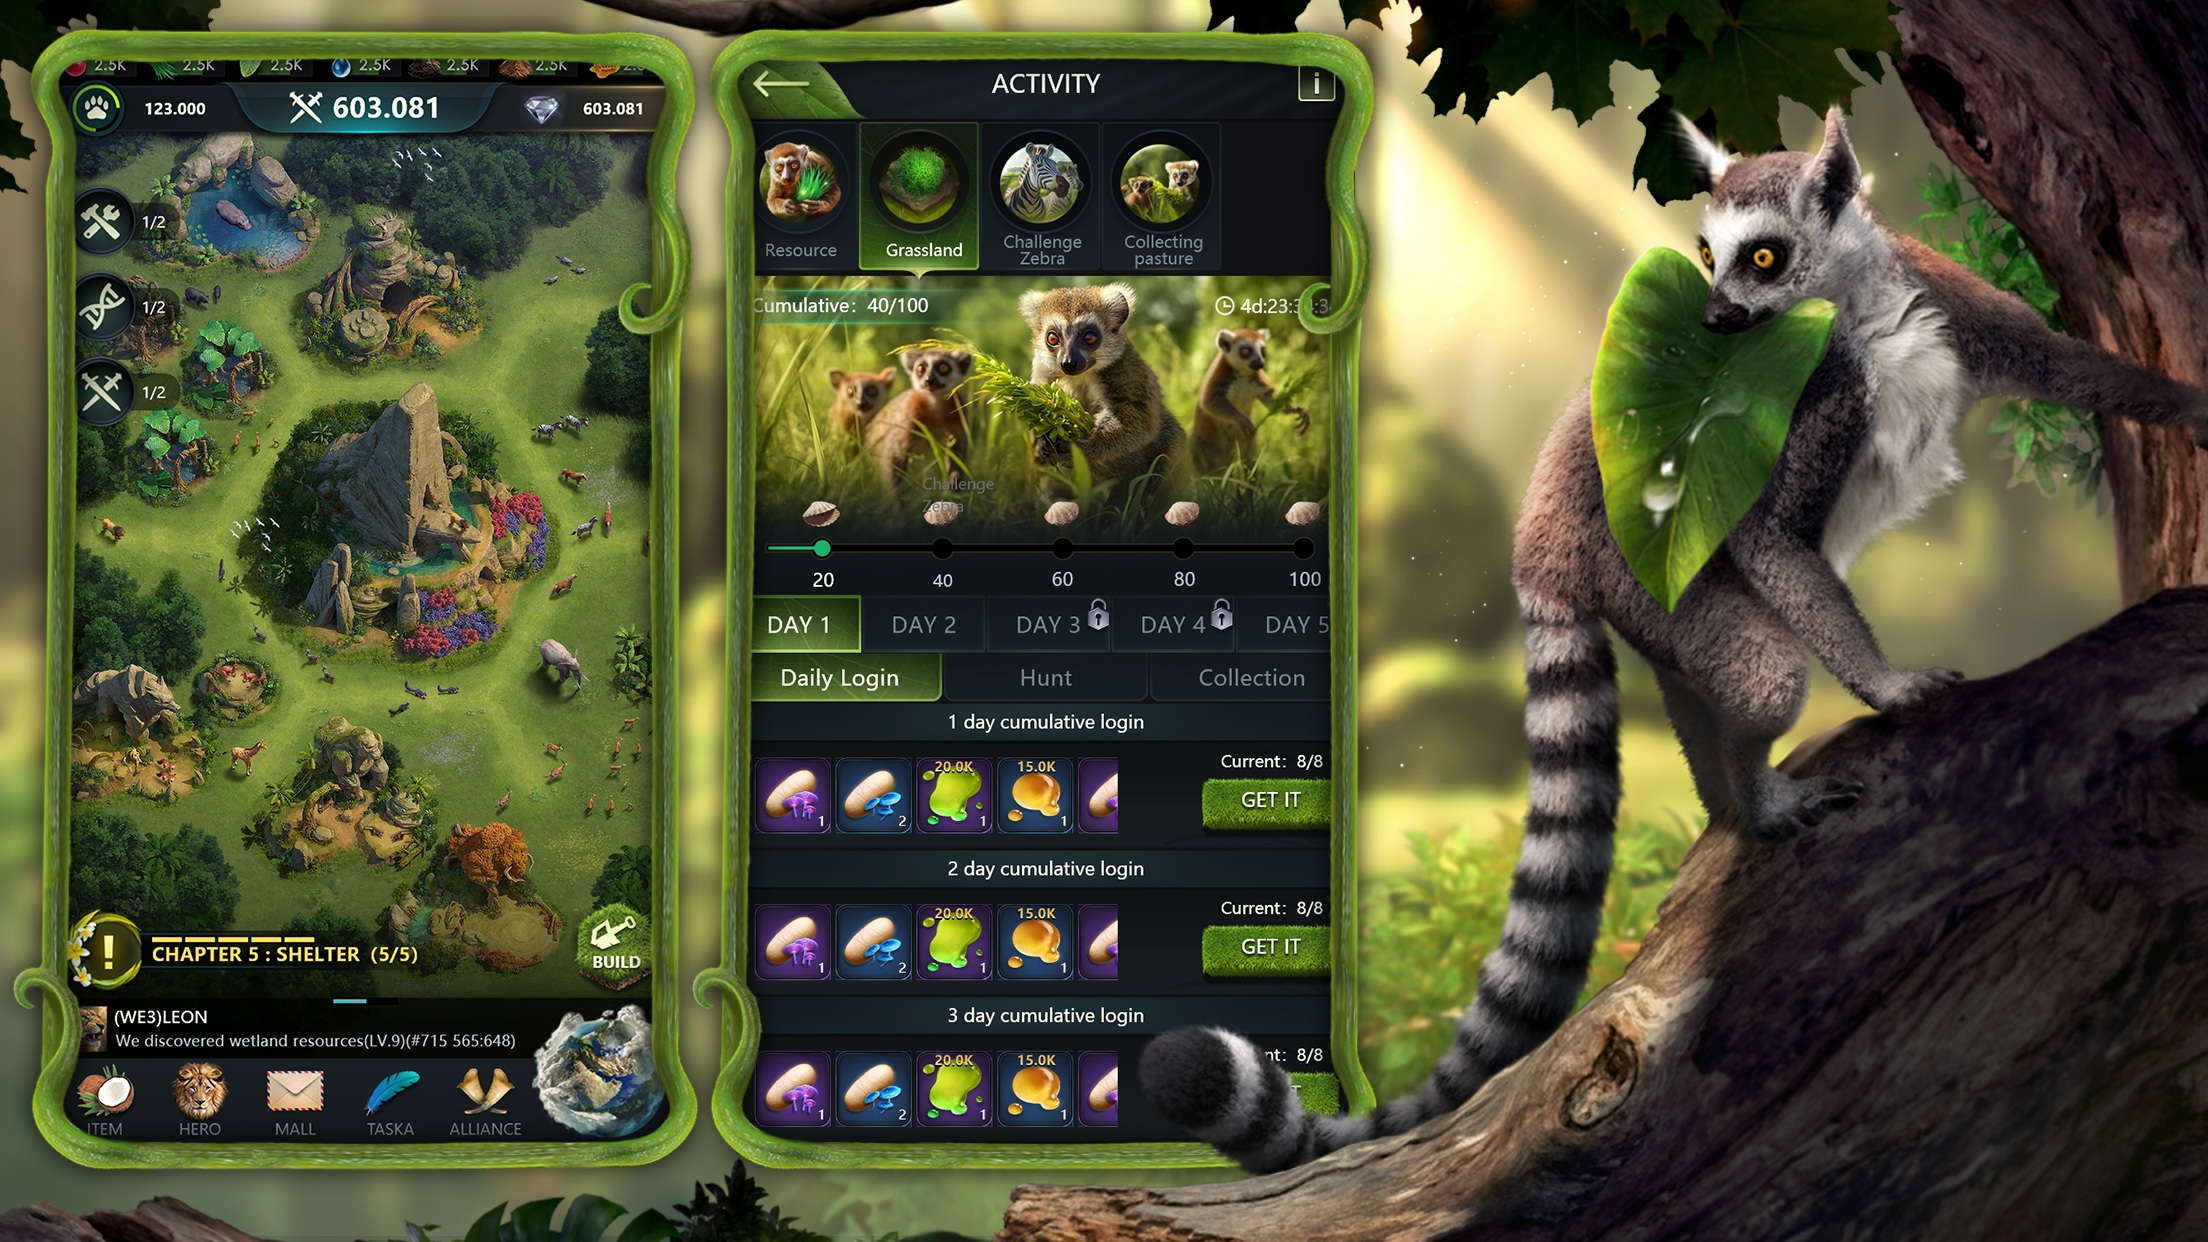 Beast Lord: The New Land - Game chiến thuật chủ đề muông thú chuẩn bị ra mắt tại Việt Nam